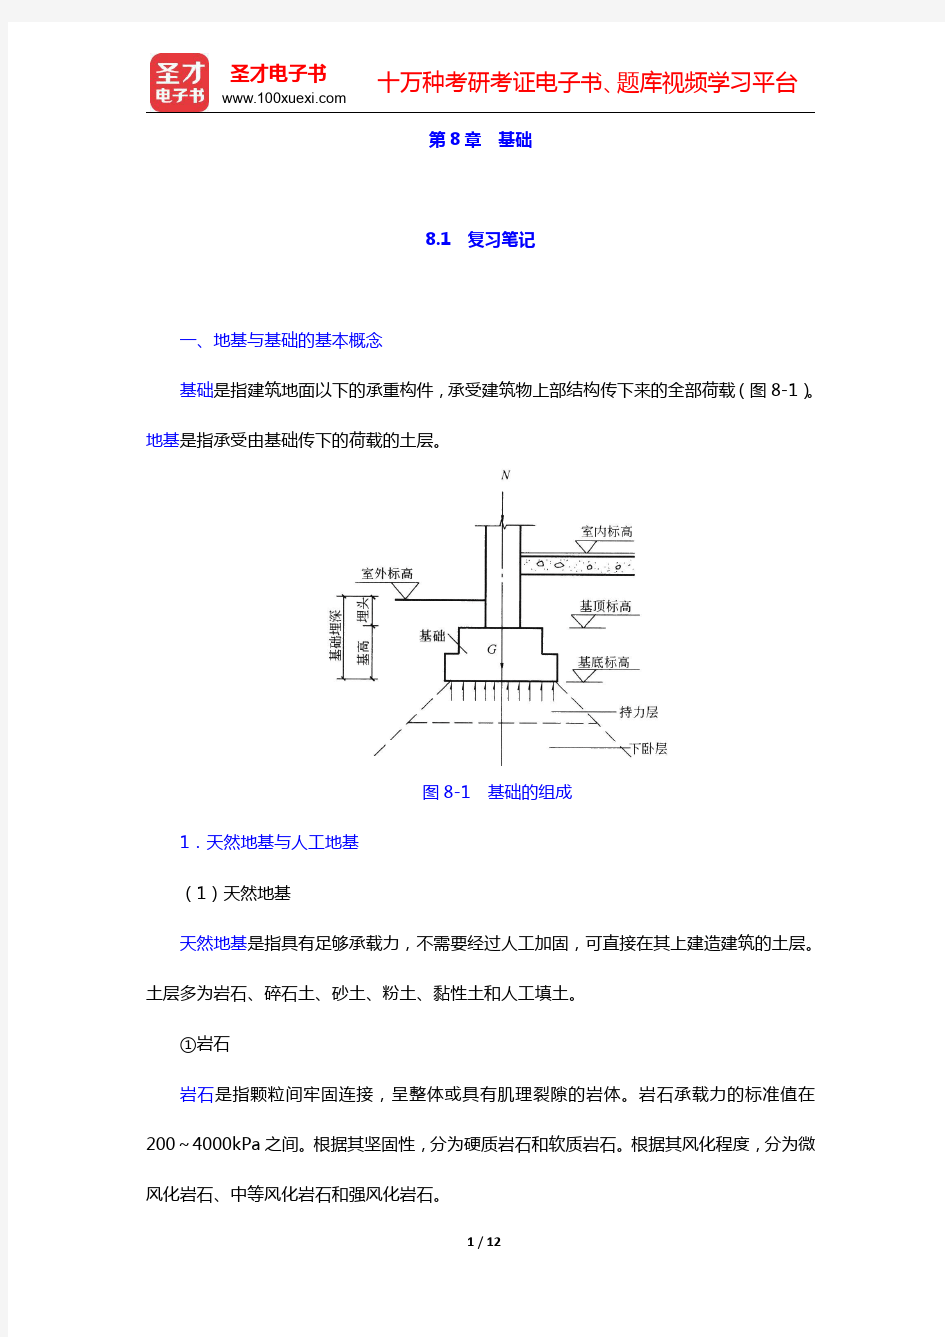 重庆大学《建筑构造(上册)》(第5版)-基础笔记和课后习题详解(圣才出品)